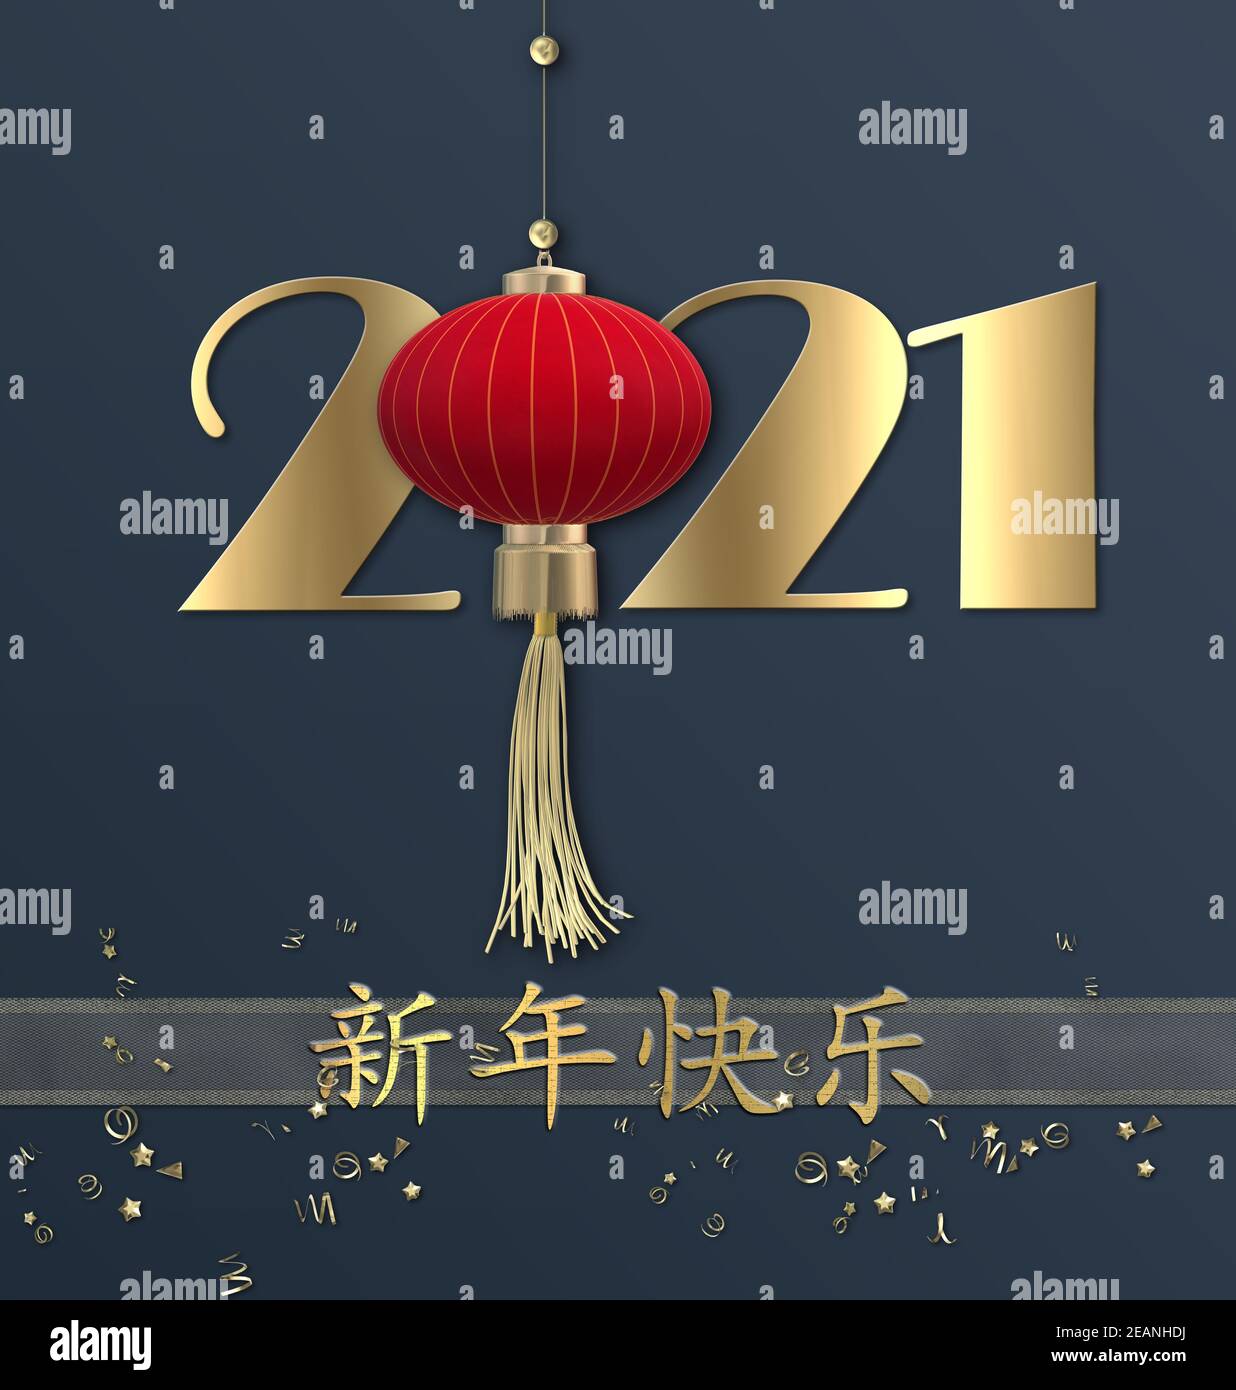 Nouvel an chinois 2021. Texte doré Happy Chinese New Year, chiffre 2021, lanterne sur fond bleu. Design pour carte de voeux, invitation, affiches, broch Banque D'Images